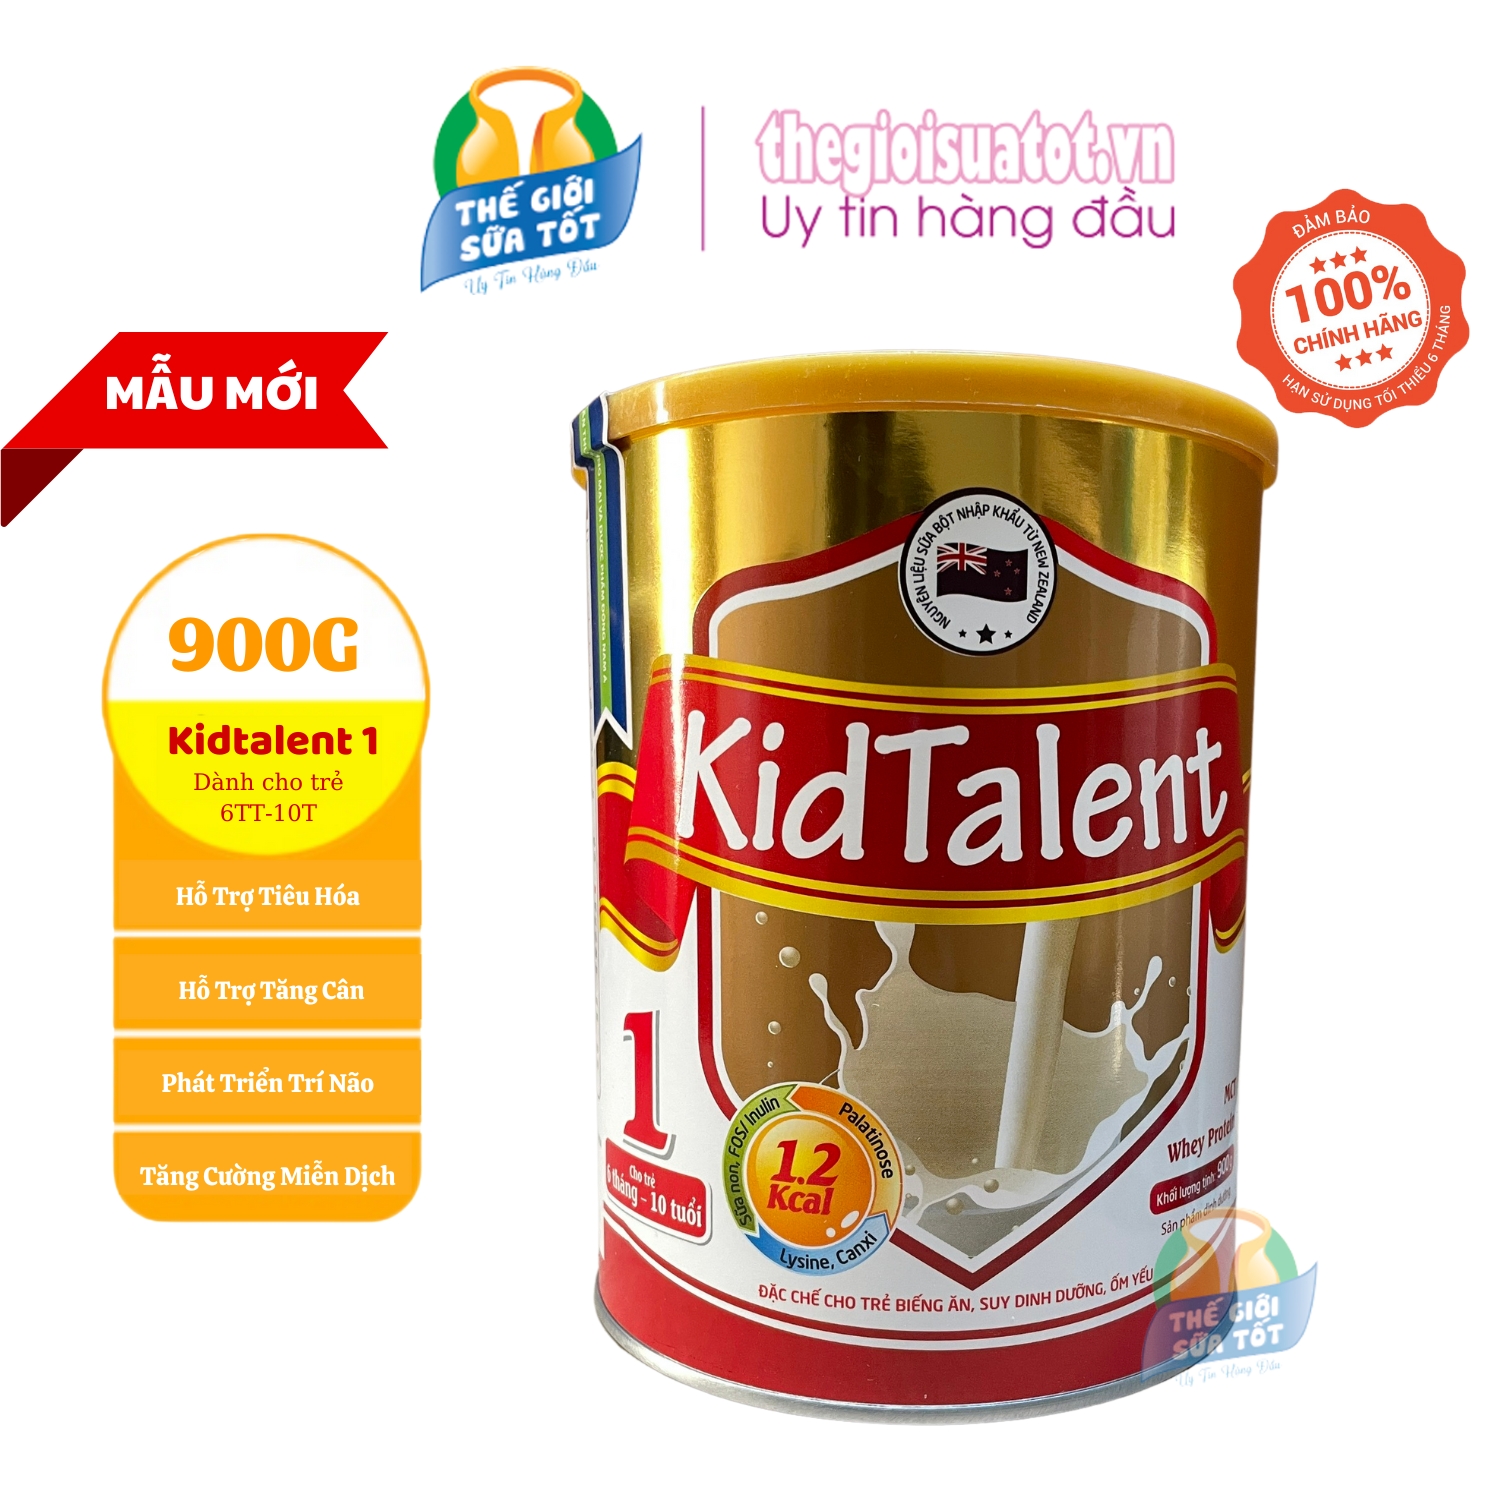 Sữa Kidtalent 1 - 900G - Sữa Bột Dành Cho Trẻ 6 Tháng